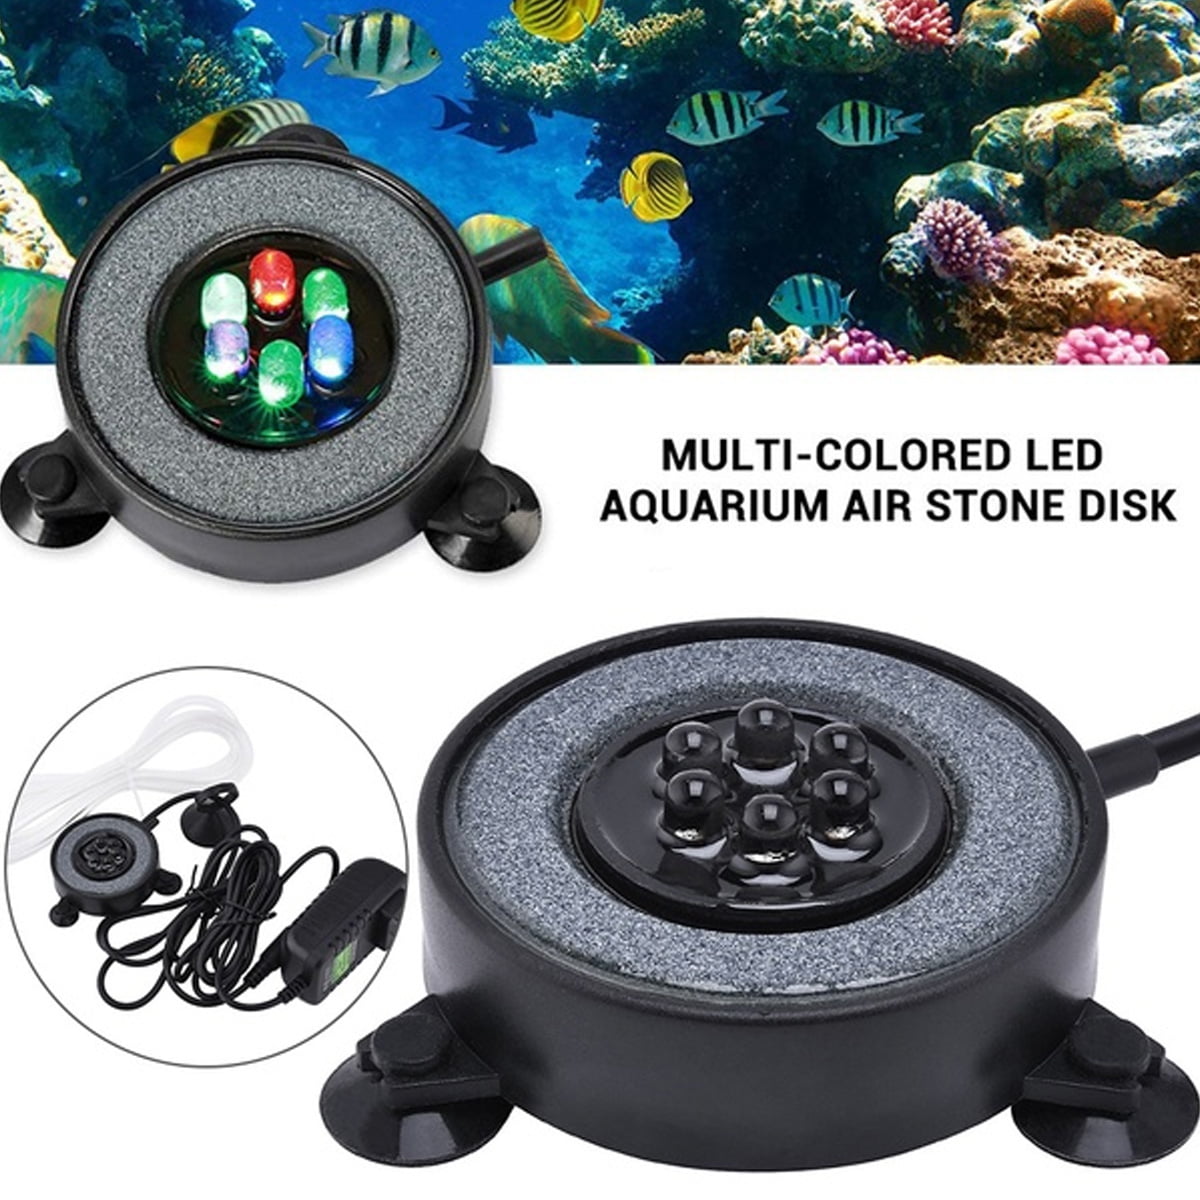 Indoor Aquarium Led Air Stone Bubble Lamp Disk Round Fish Tank Bubbler